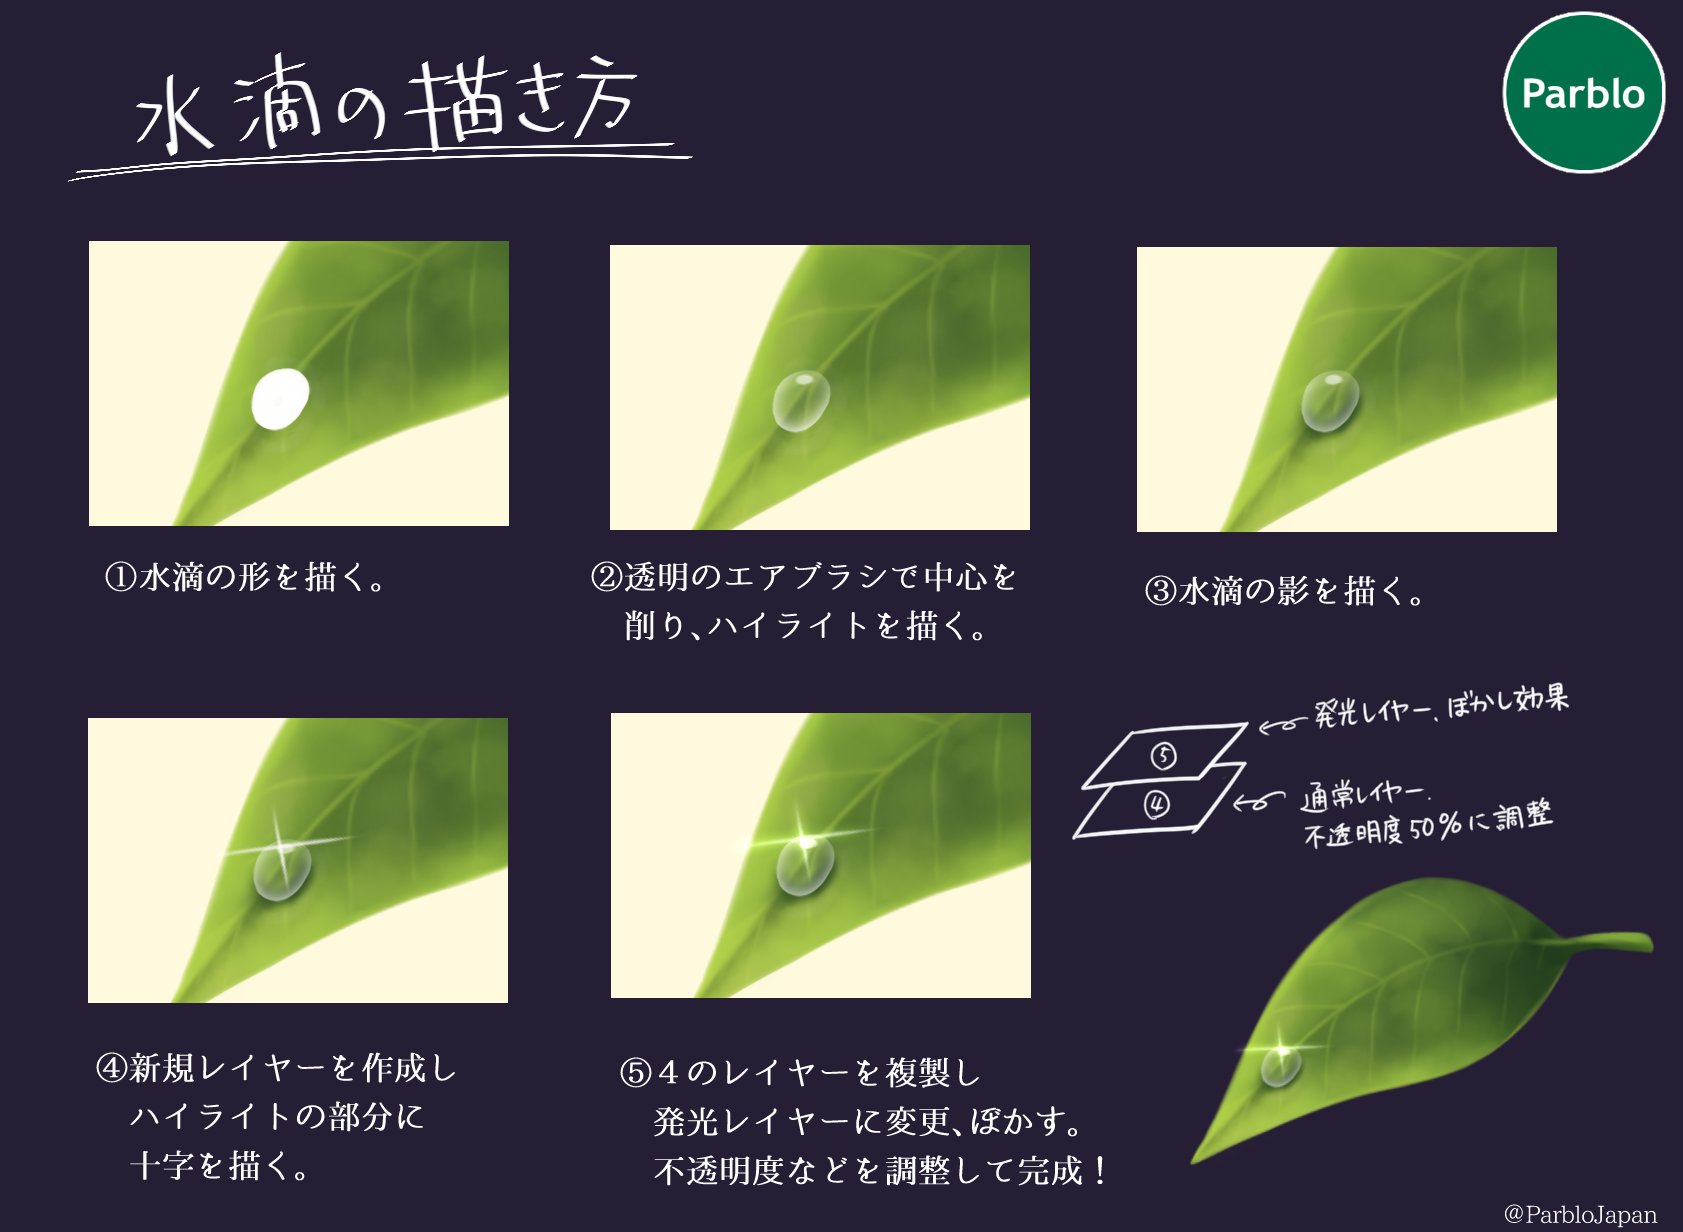 Parblo Japan 水滴の描き方 葉っぱや傘などは水をはじくので一番簡単な まるの形 で描けますね 汗のような垂れている水滴はまたの機会にご紹介します イラスト好きな人と繋がりたい 絵描きさんと繋がりたい Parblo T Co Hjctqvqhsh